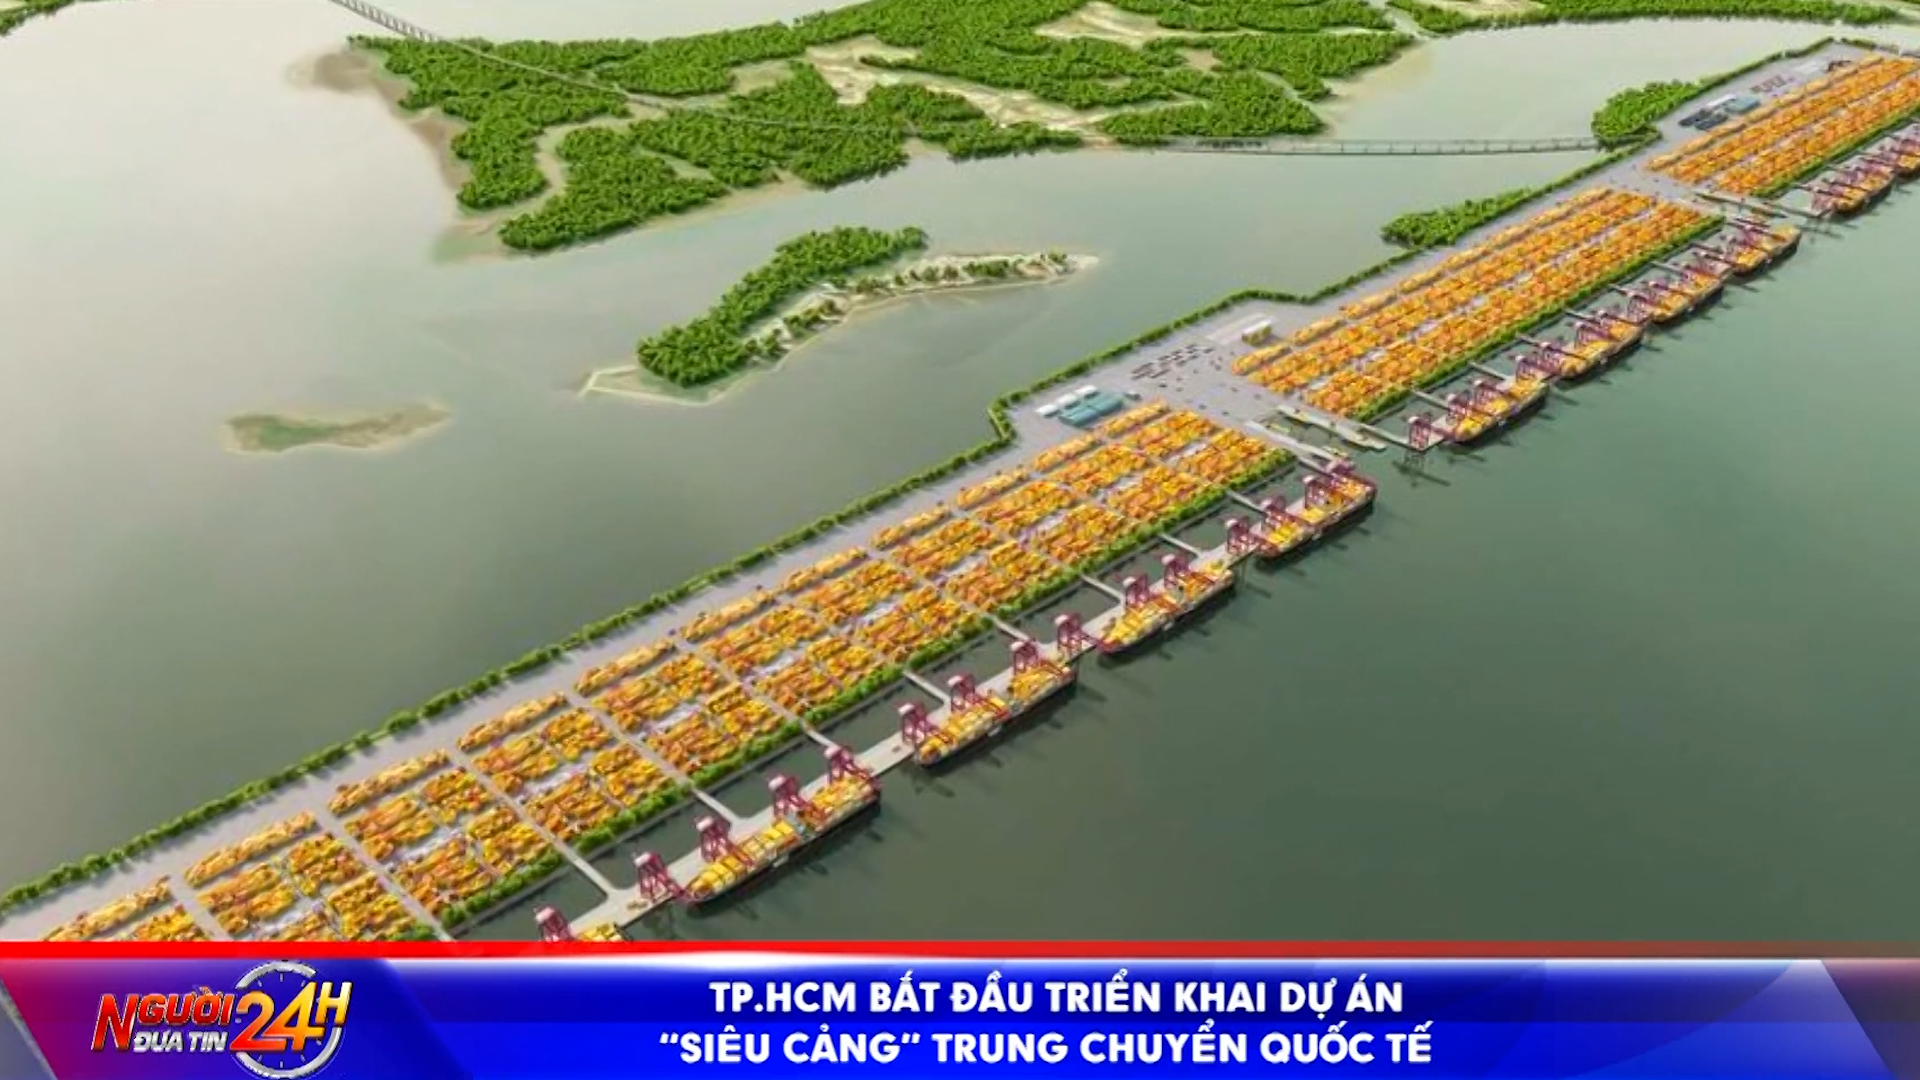 TP.HCM bắt đầu triển khai dự án ‘siêu cảng’ trung chuyển quốc tế